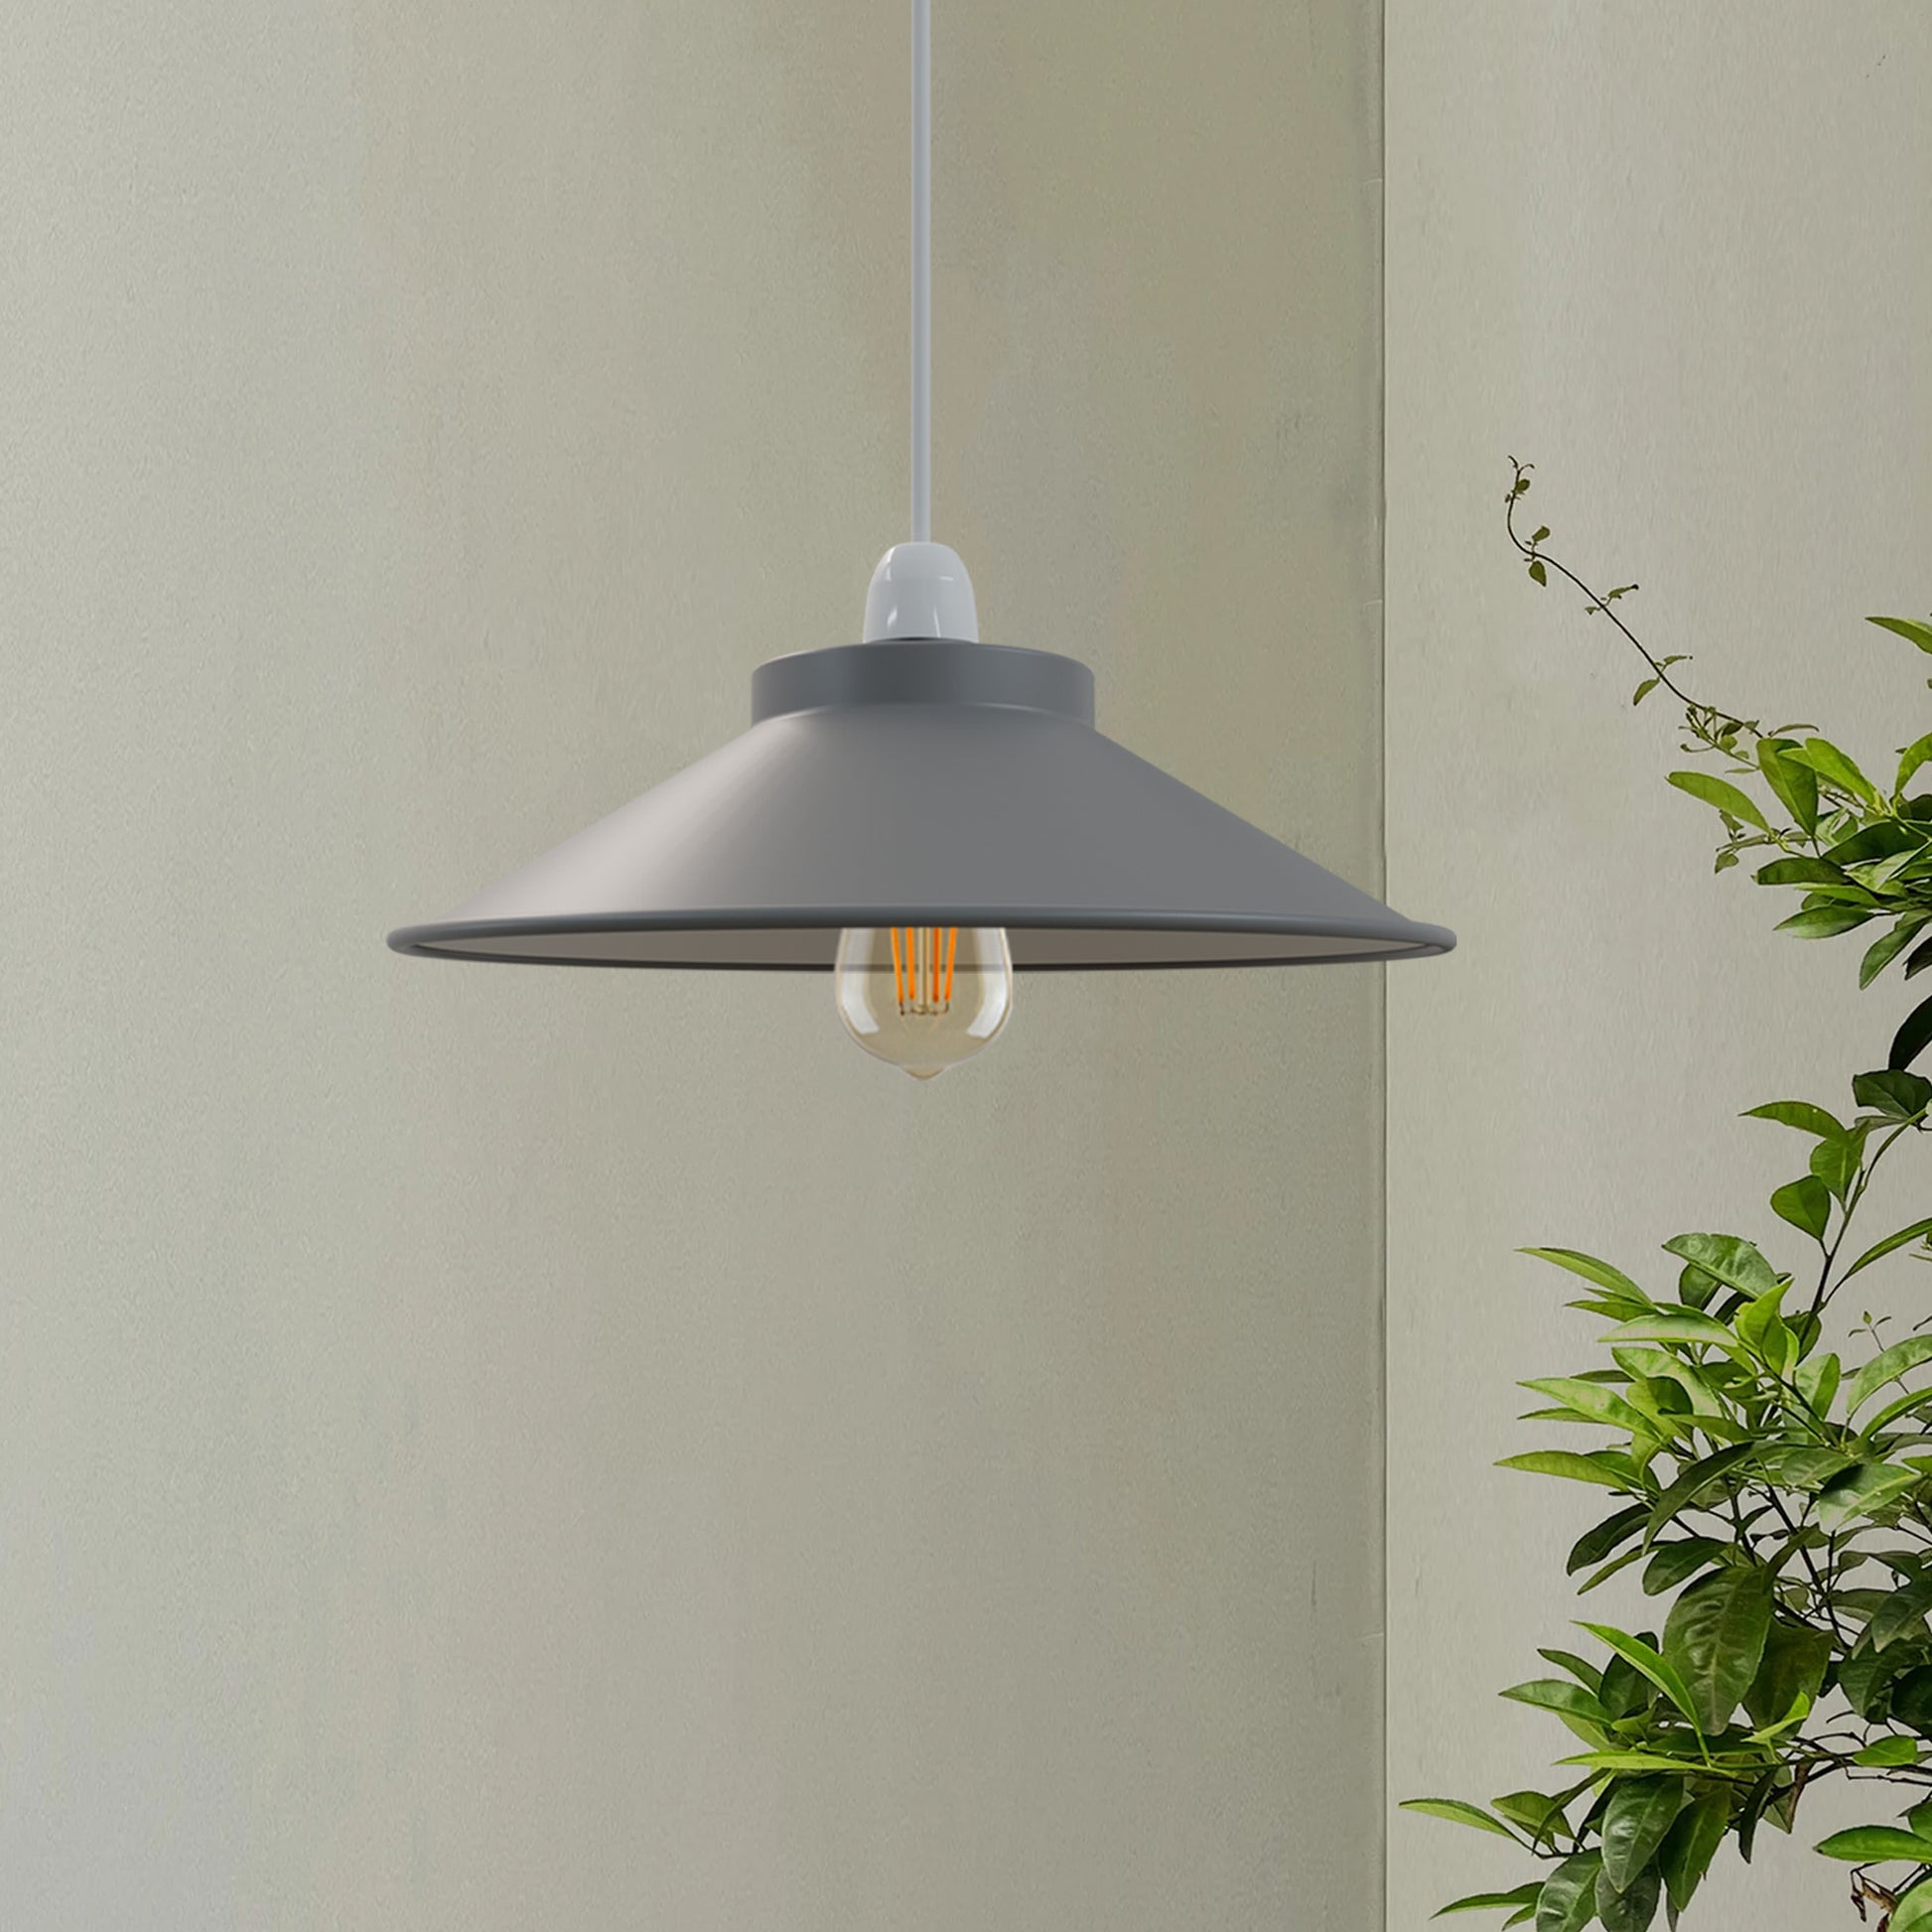 lampshades grey